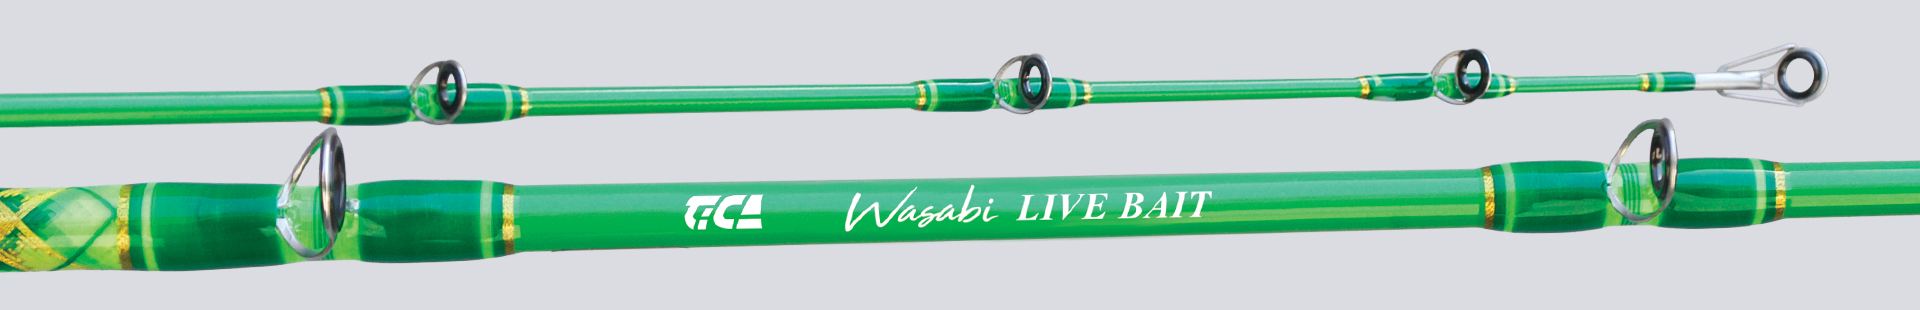 Wasabi LIVE BAIT